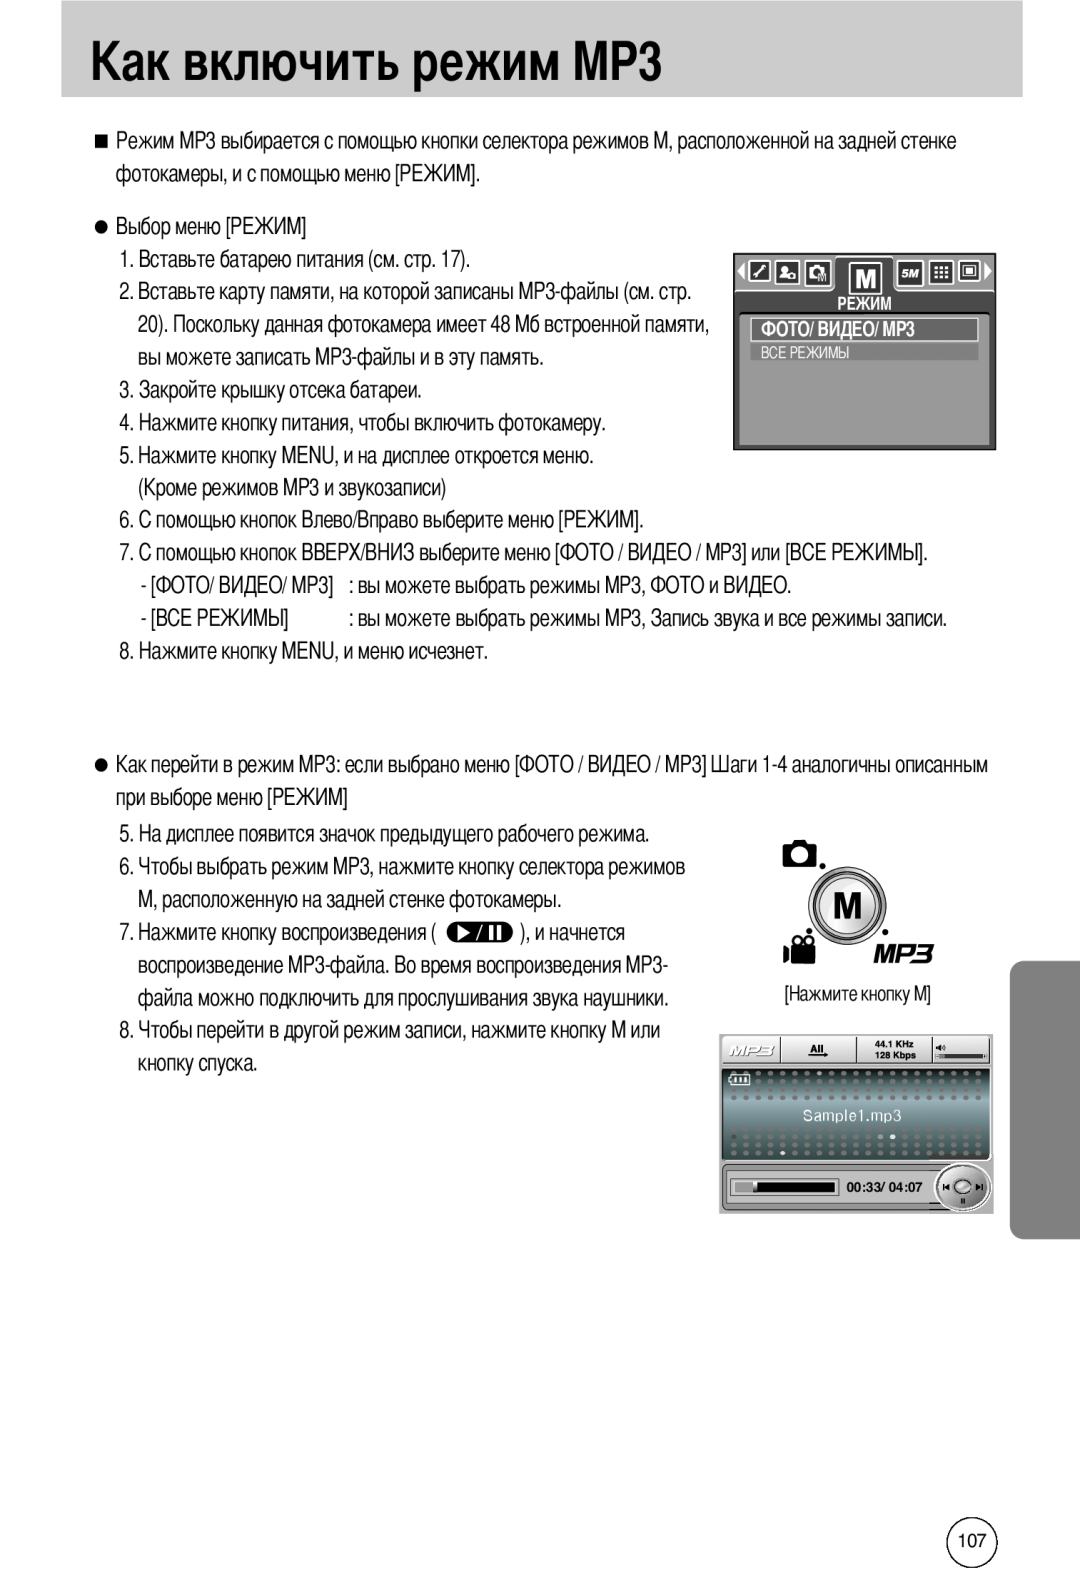 Samsung EC-I50ZZBBA/GB фотокамеры, и с помощью меню, вы можете записать MP3-файлы и в эту память, при выборе меню, 0033 